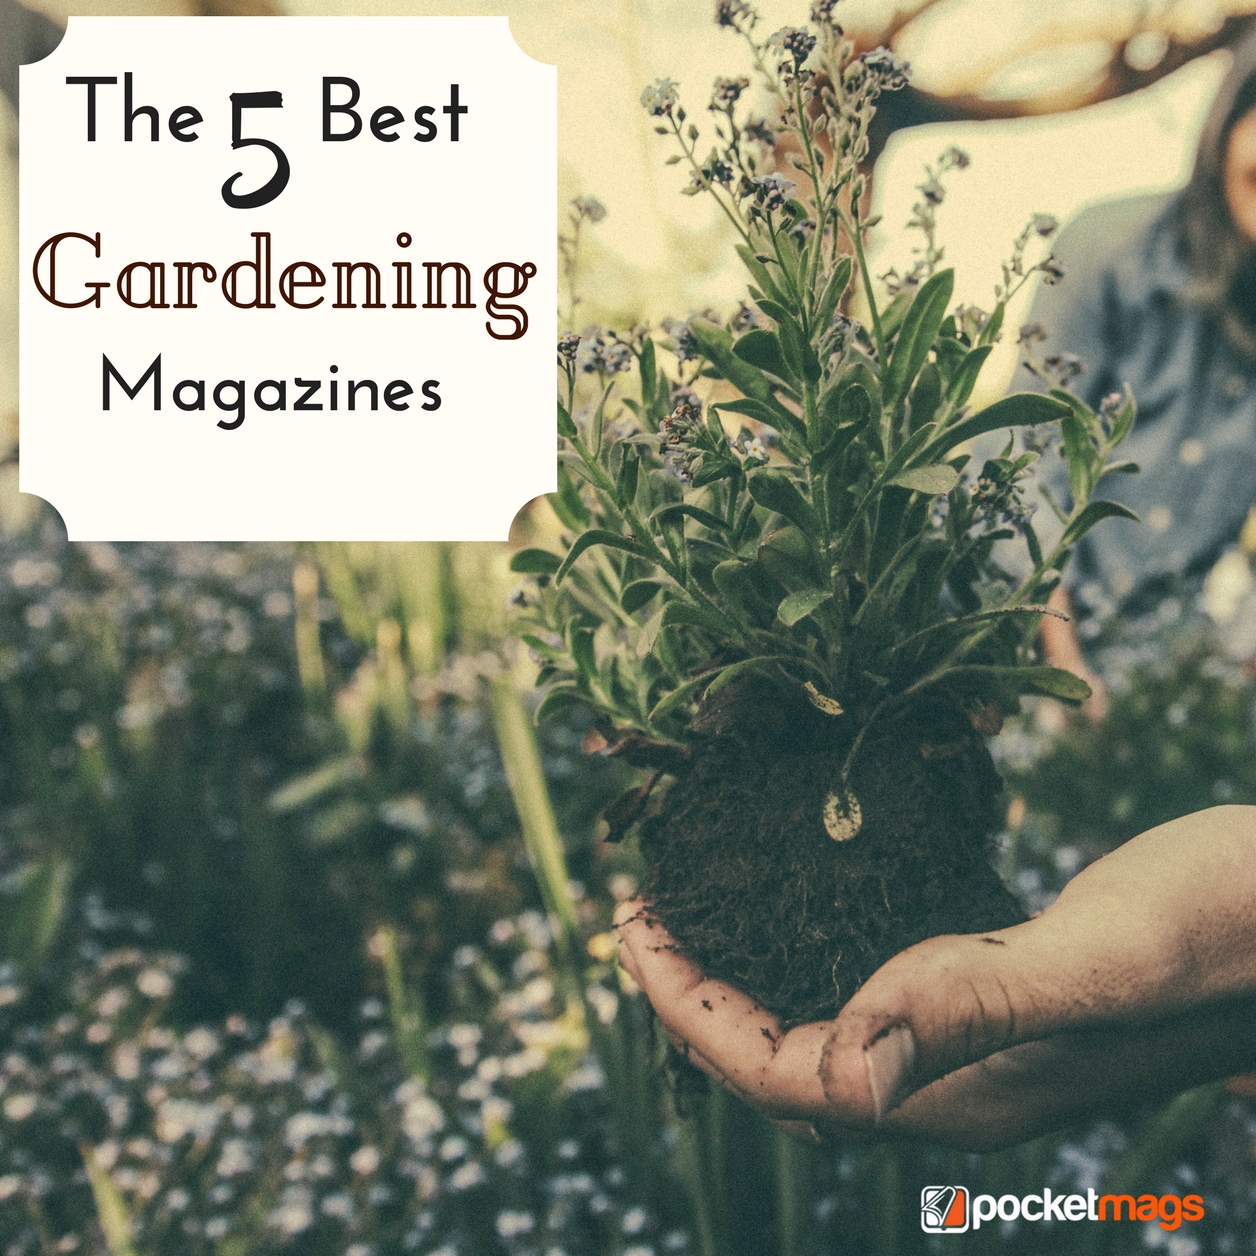 The 5 Best Gardening Magazines